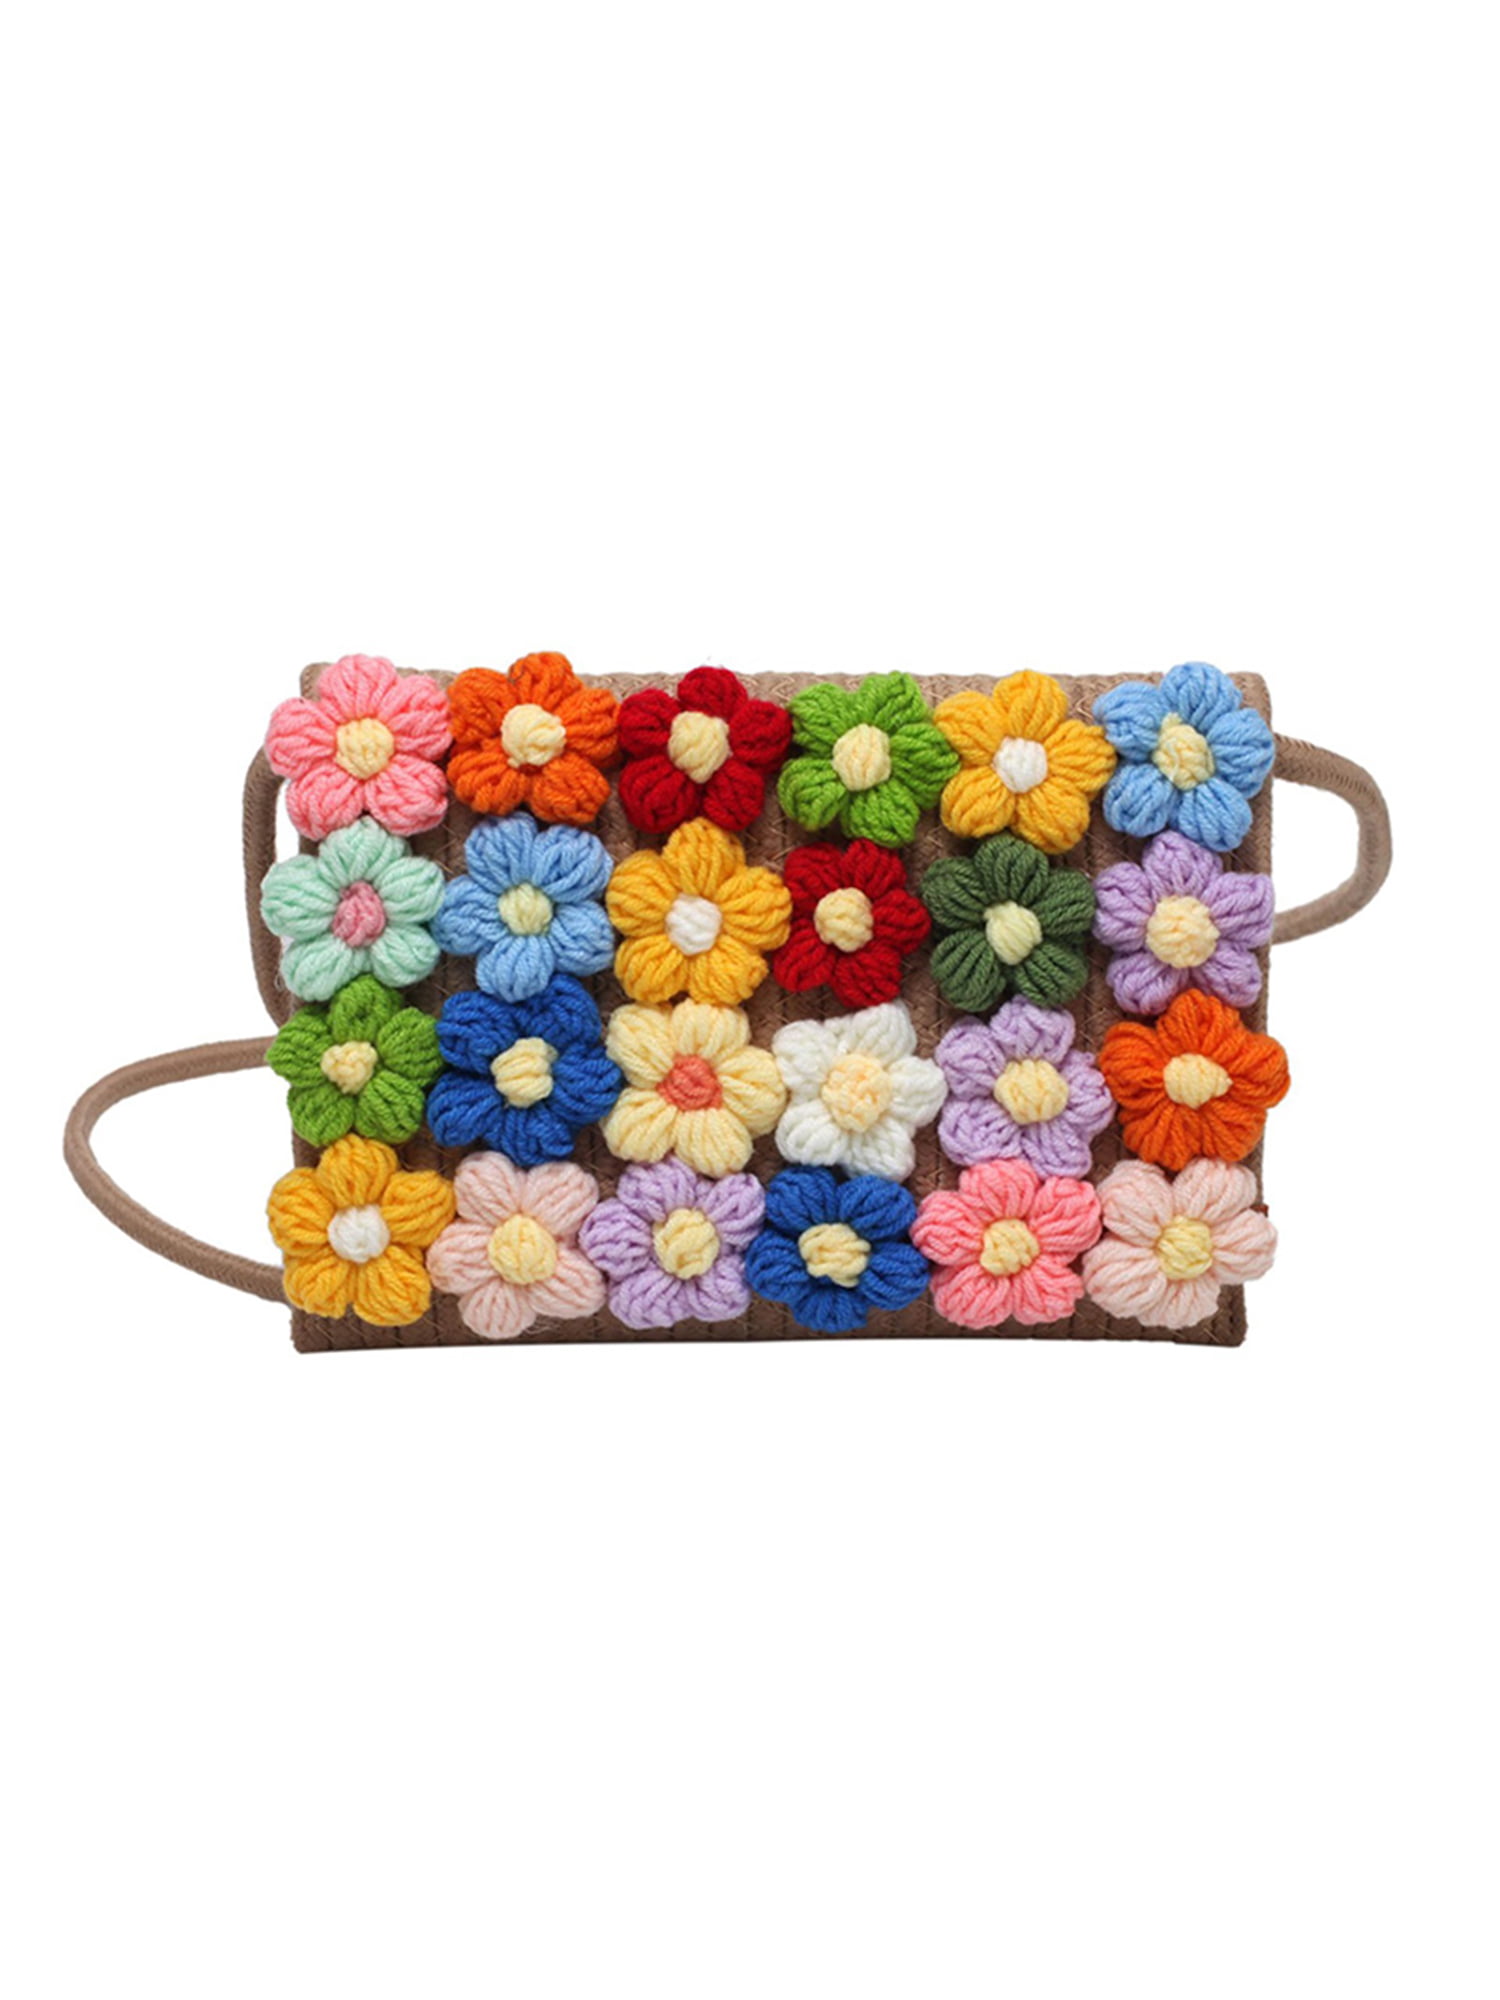 Ravelry: Dual Flower Bag pattern by CrochetCartel Co